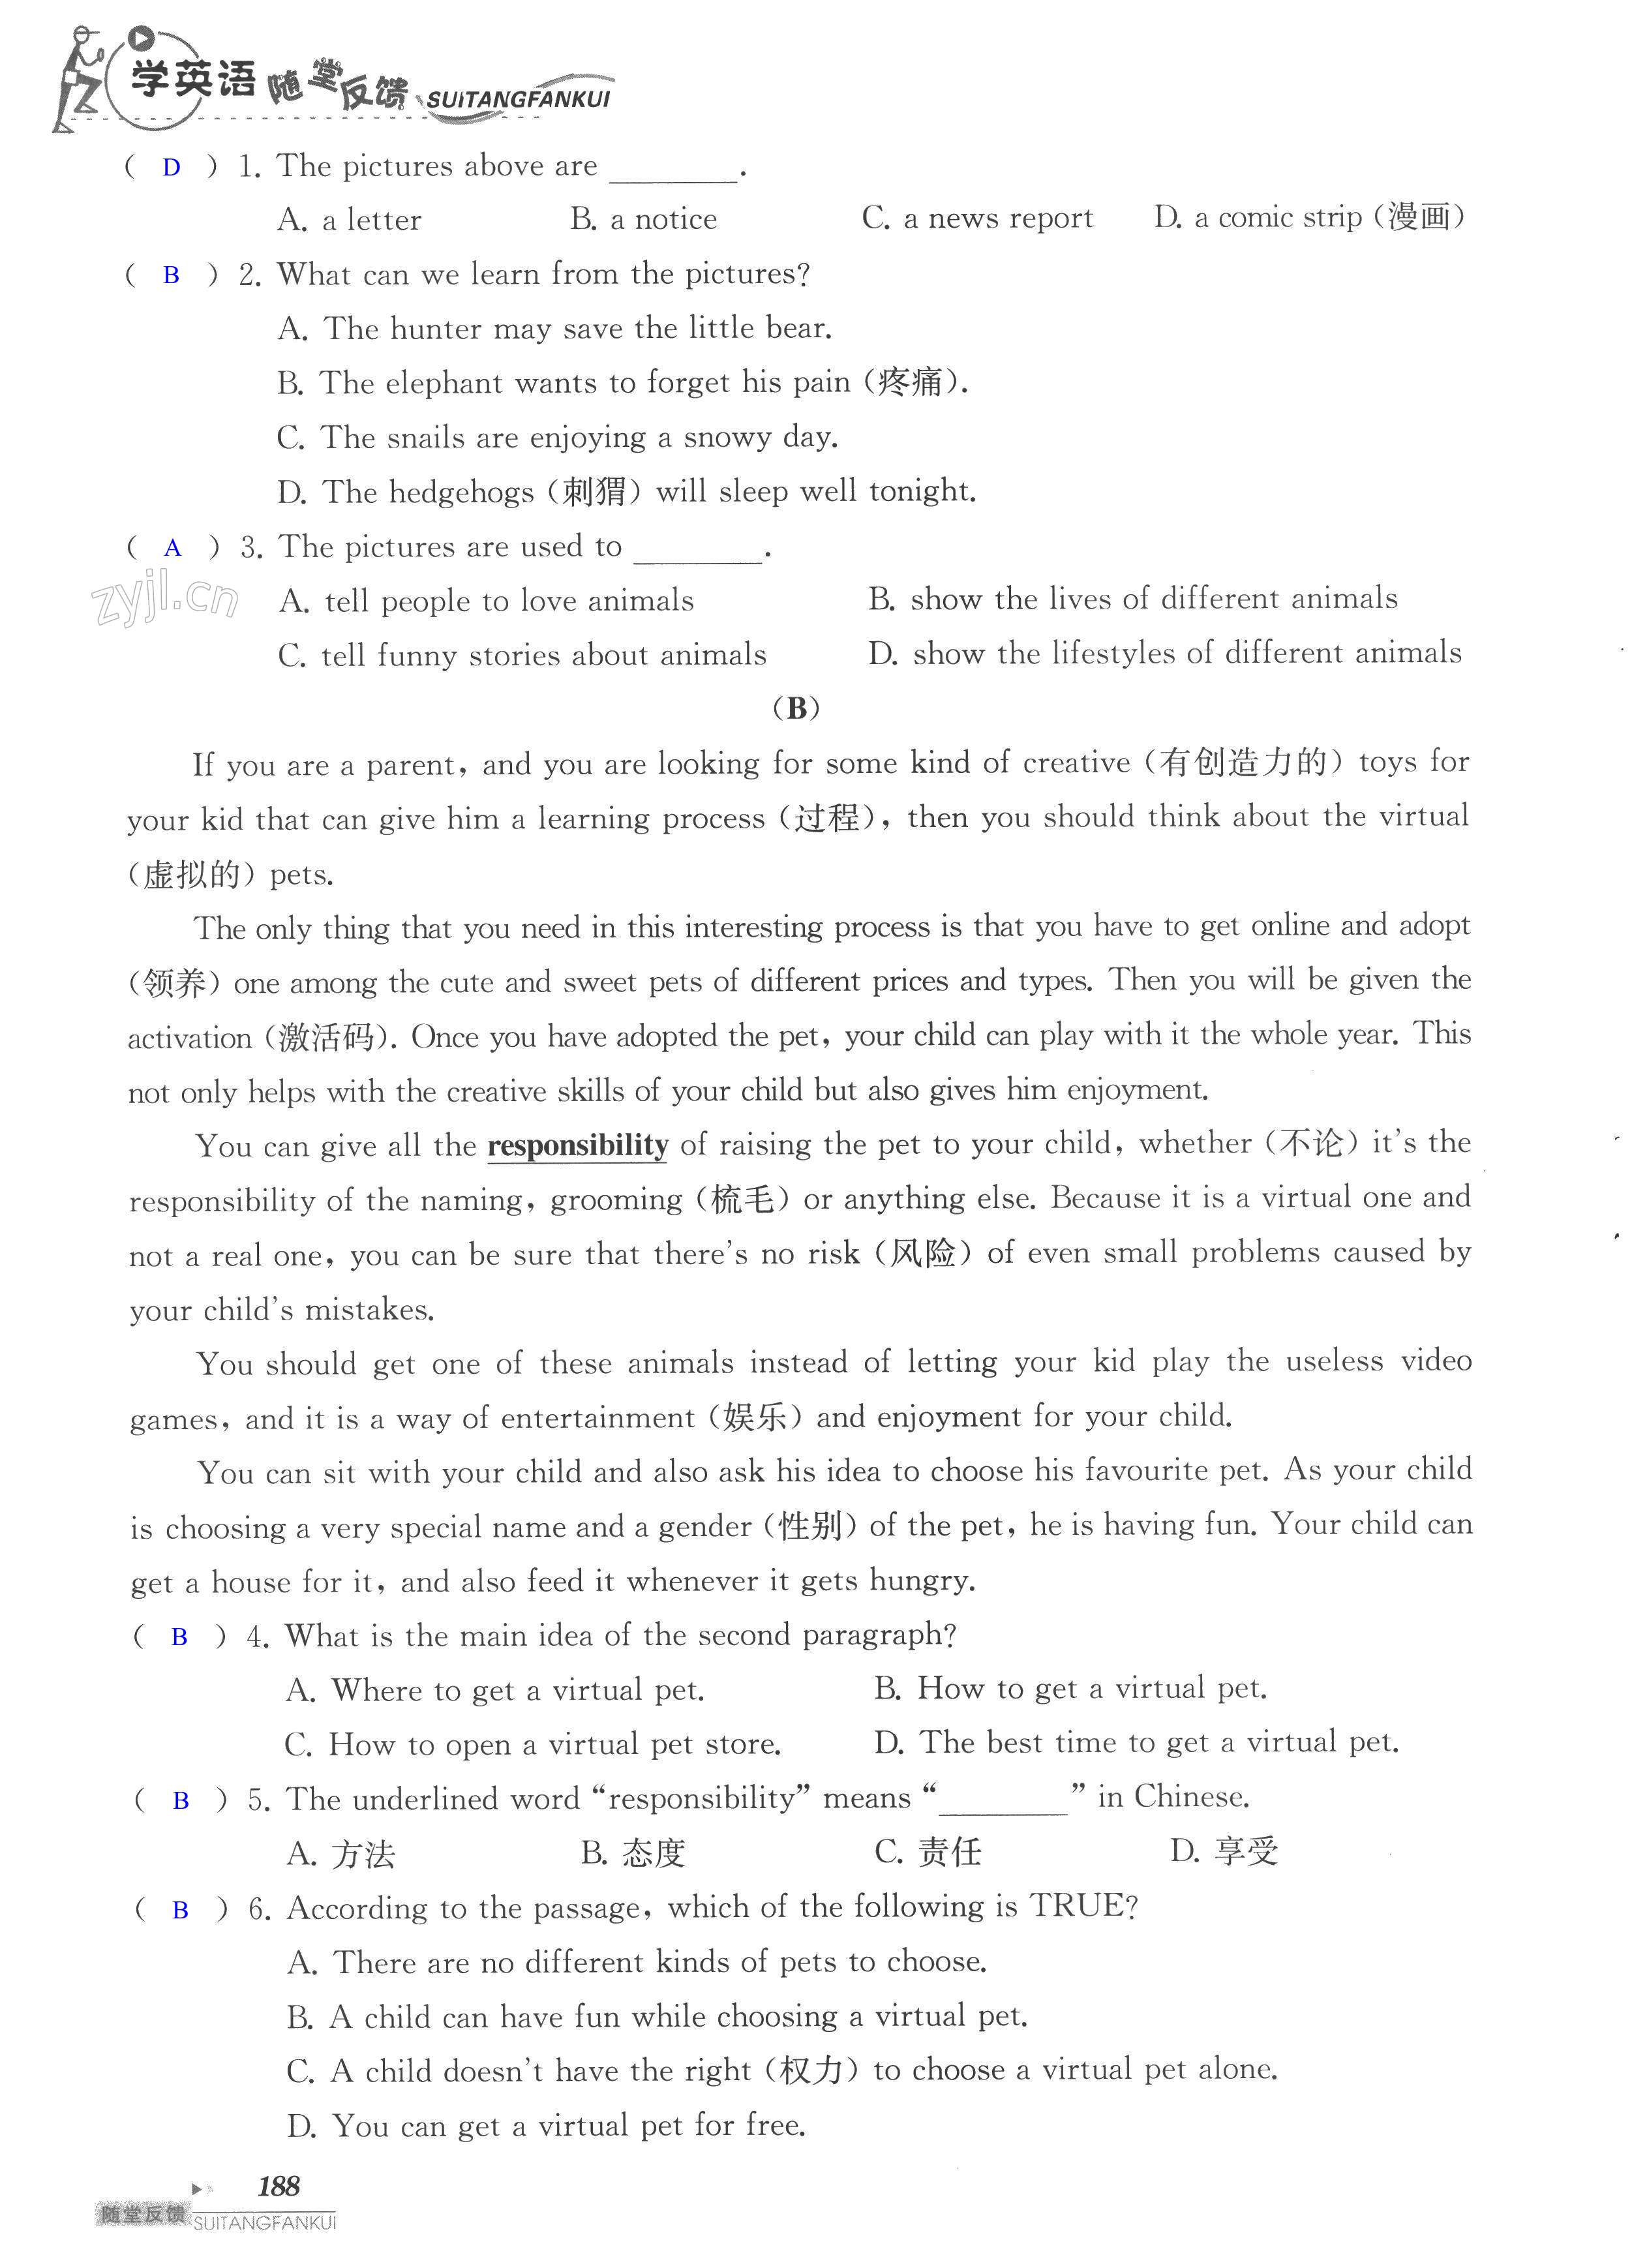 单元综合测试卷 Test for Unit 5 of 8A - 第188页